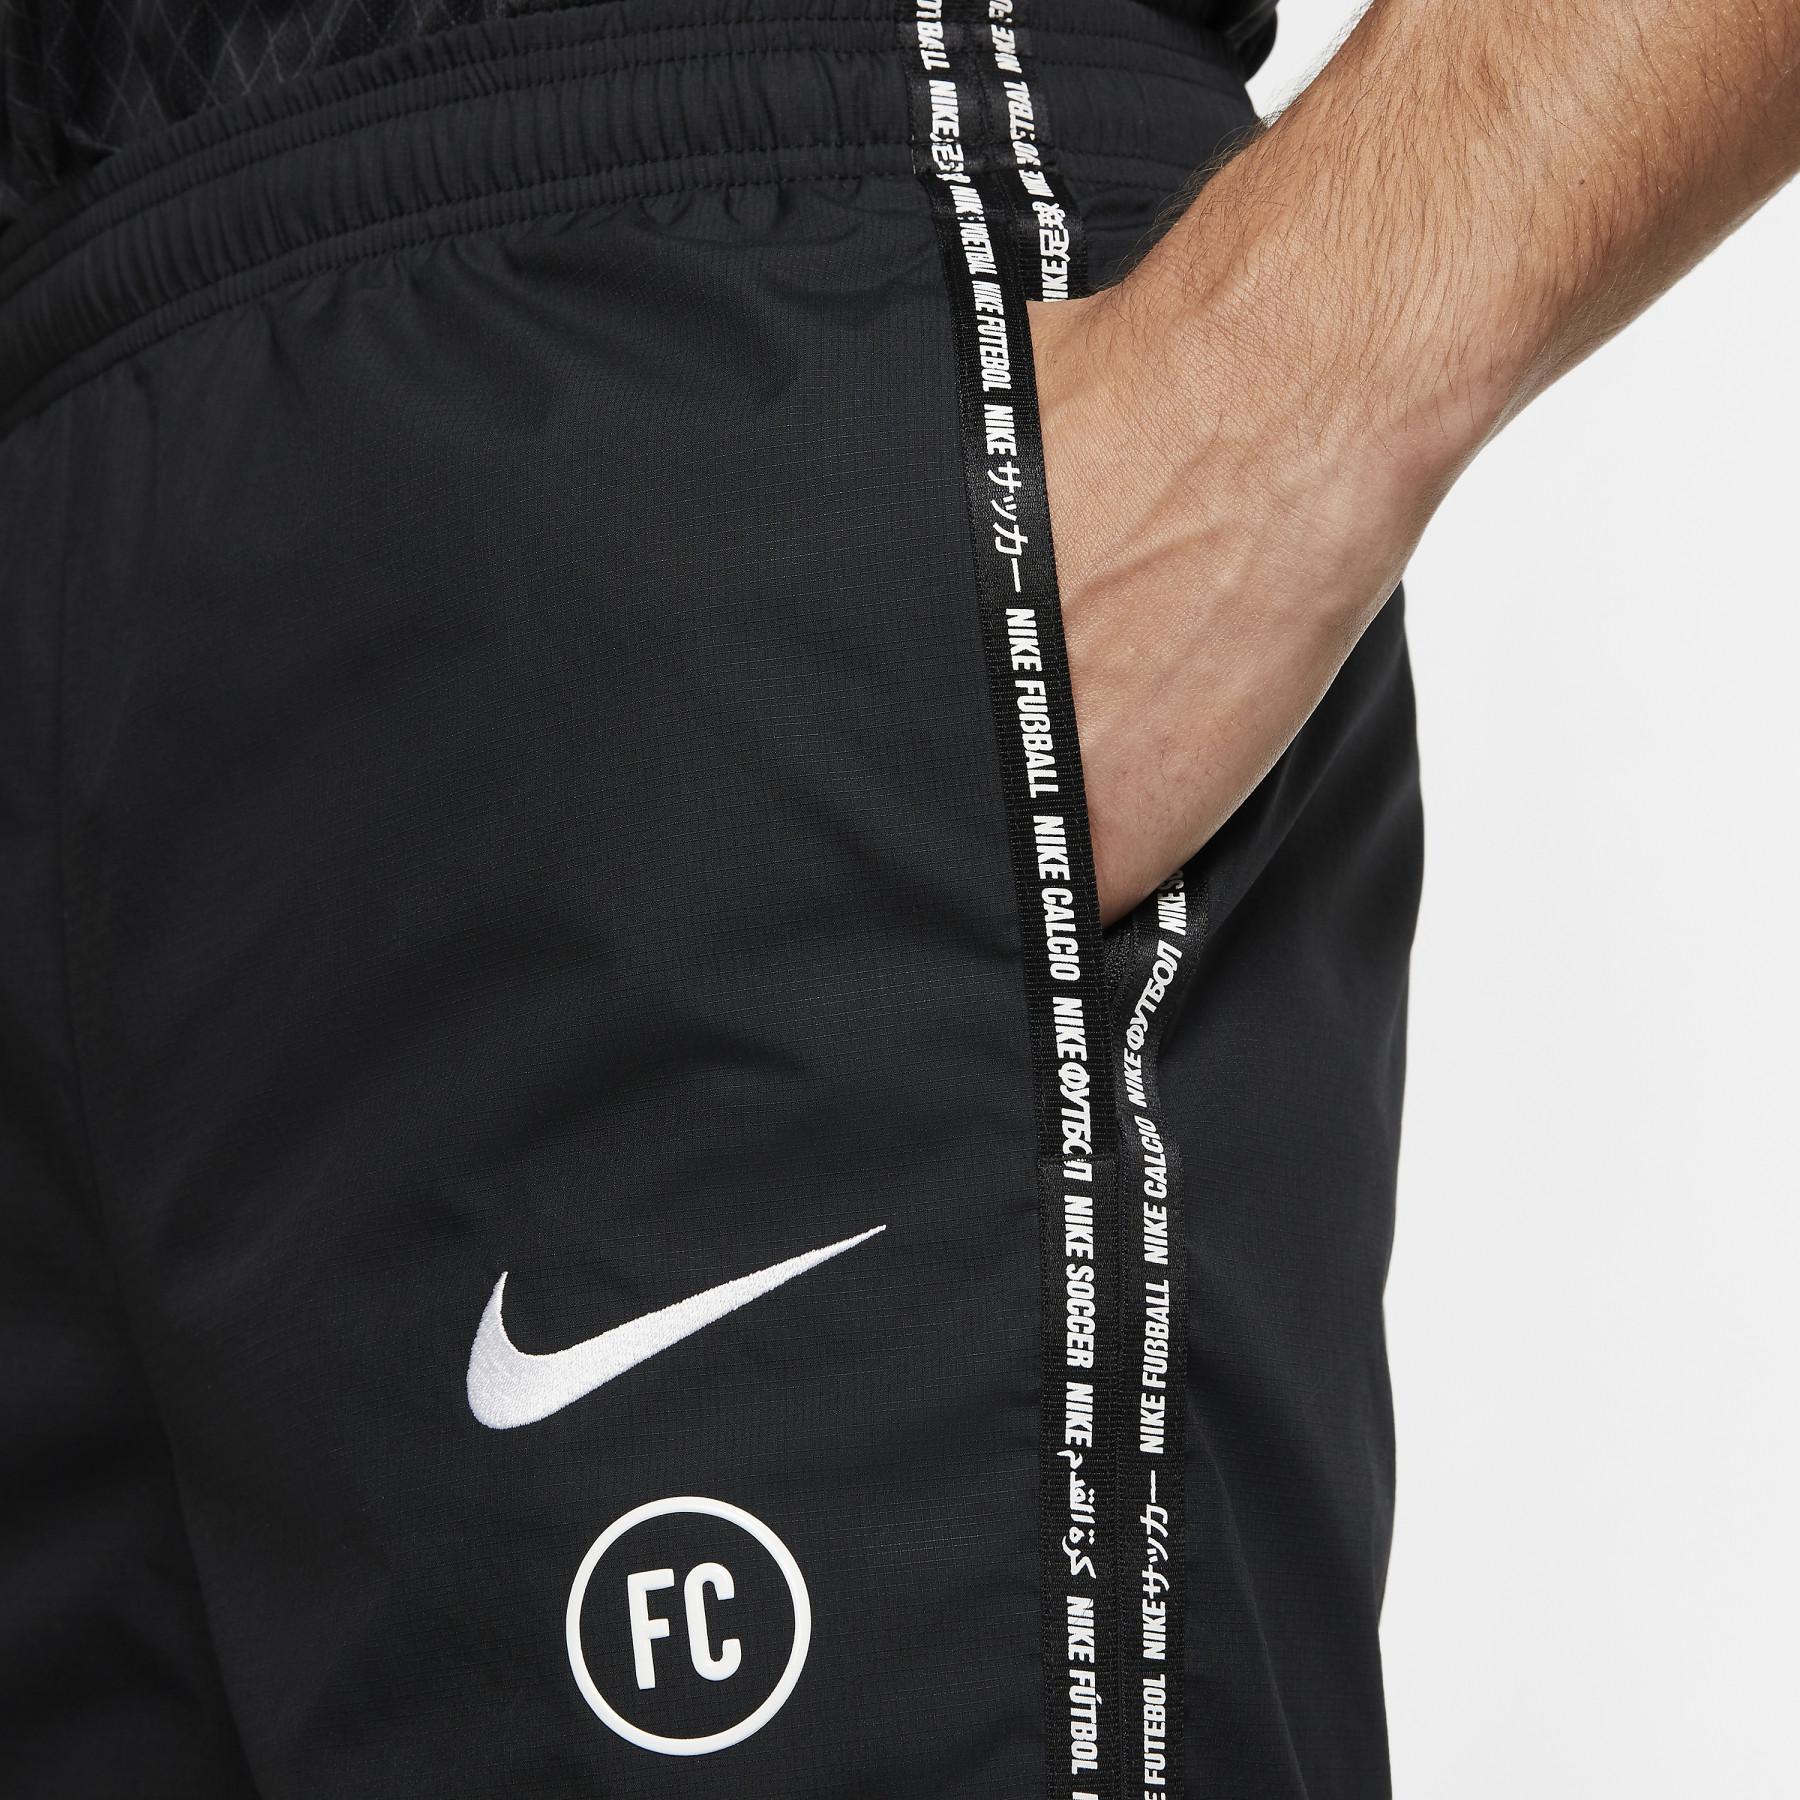 Calças Nike F.C.